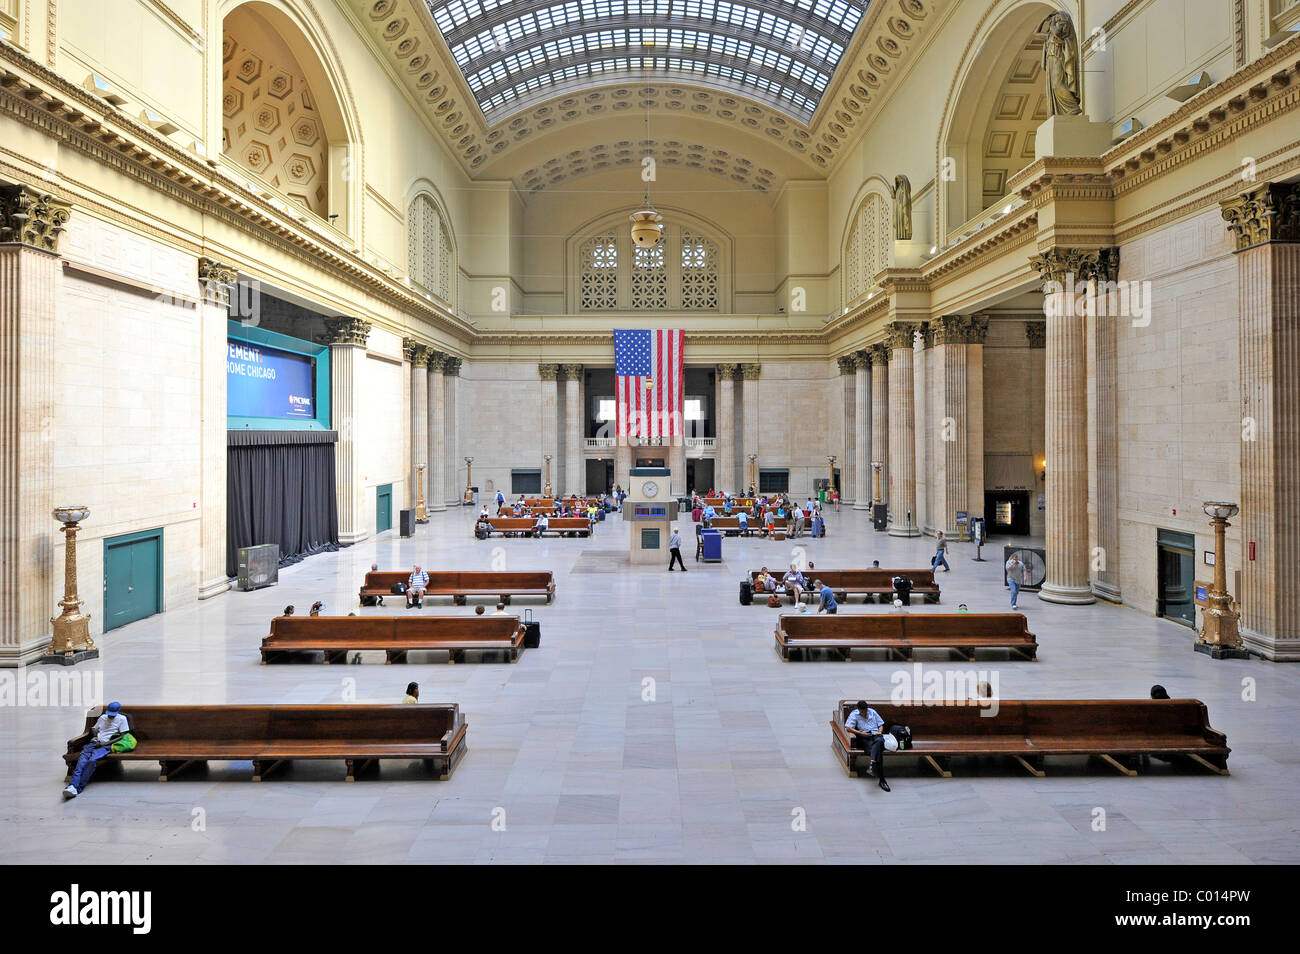 Vista interna della grande sala principale sala di attesa, Union Station, Chicago, Illinois, Stati Uniti d'America, STATI UNITI D'AMERICA Foto Stock